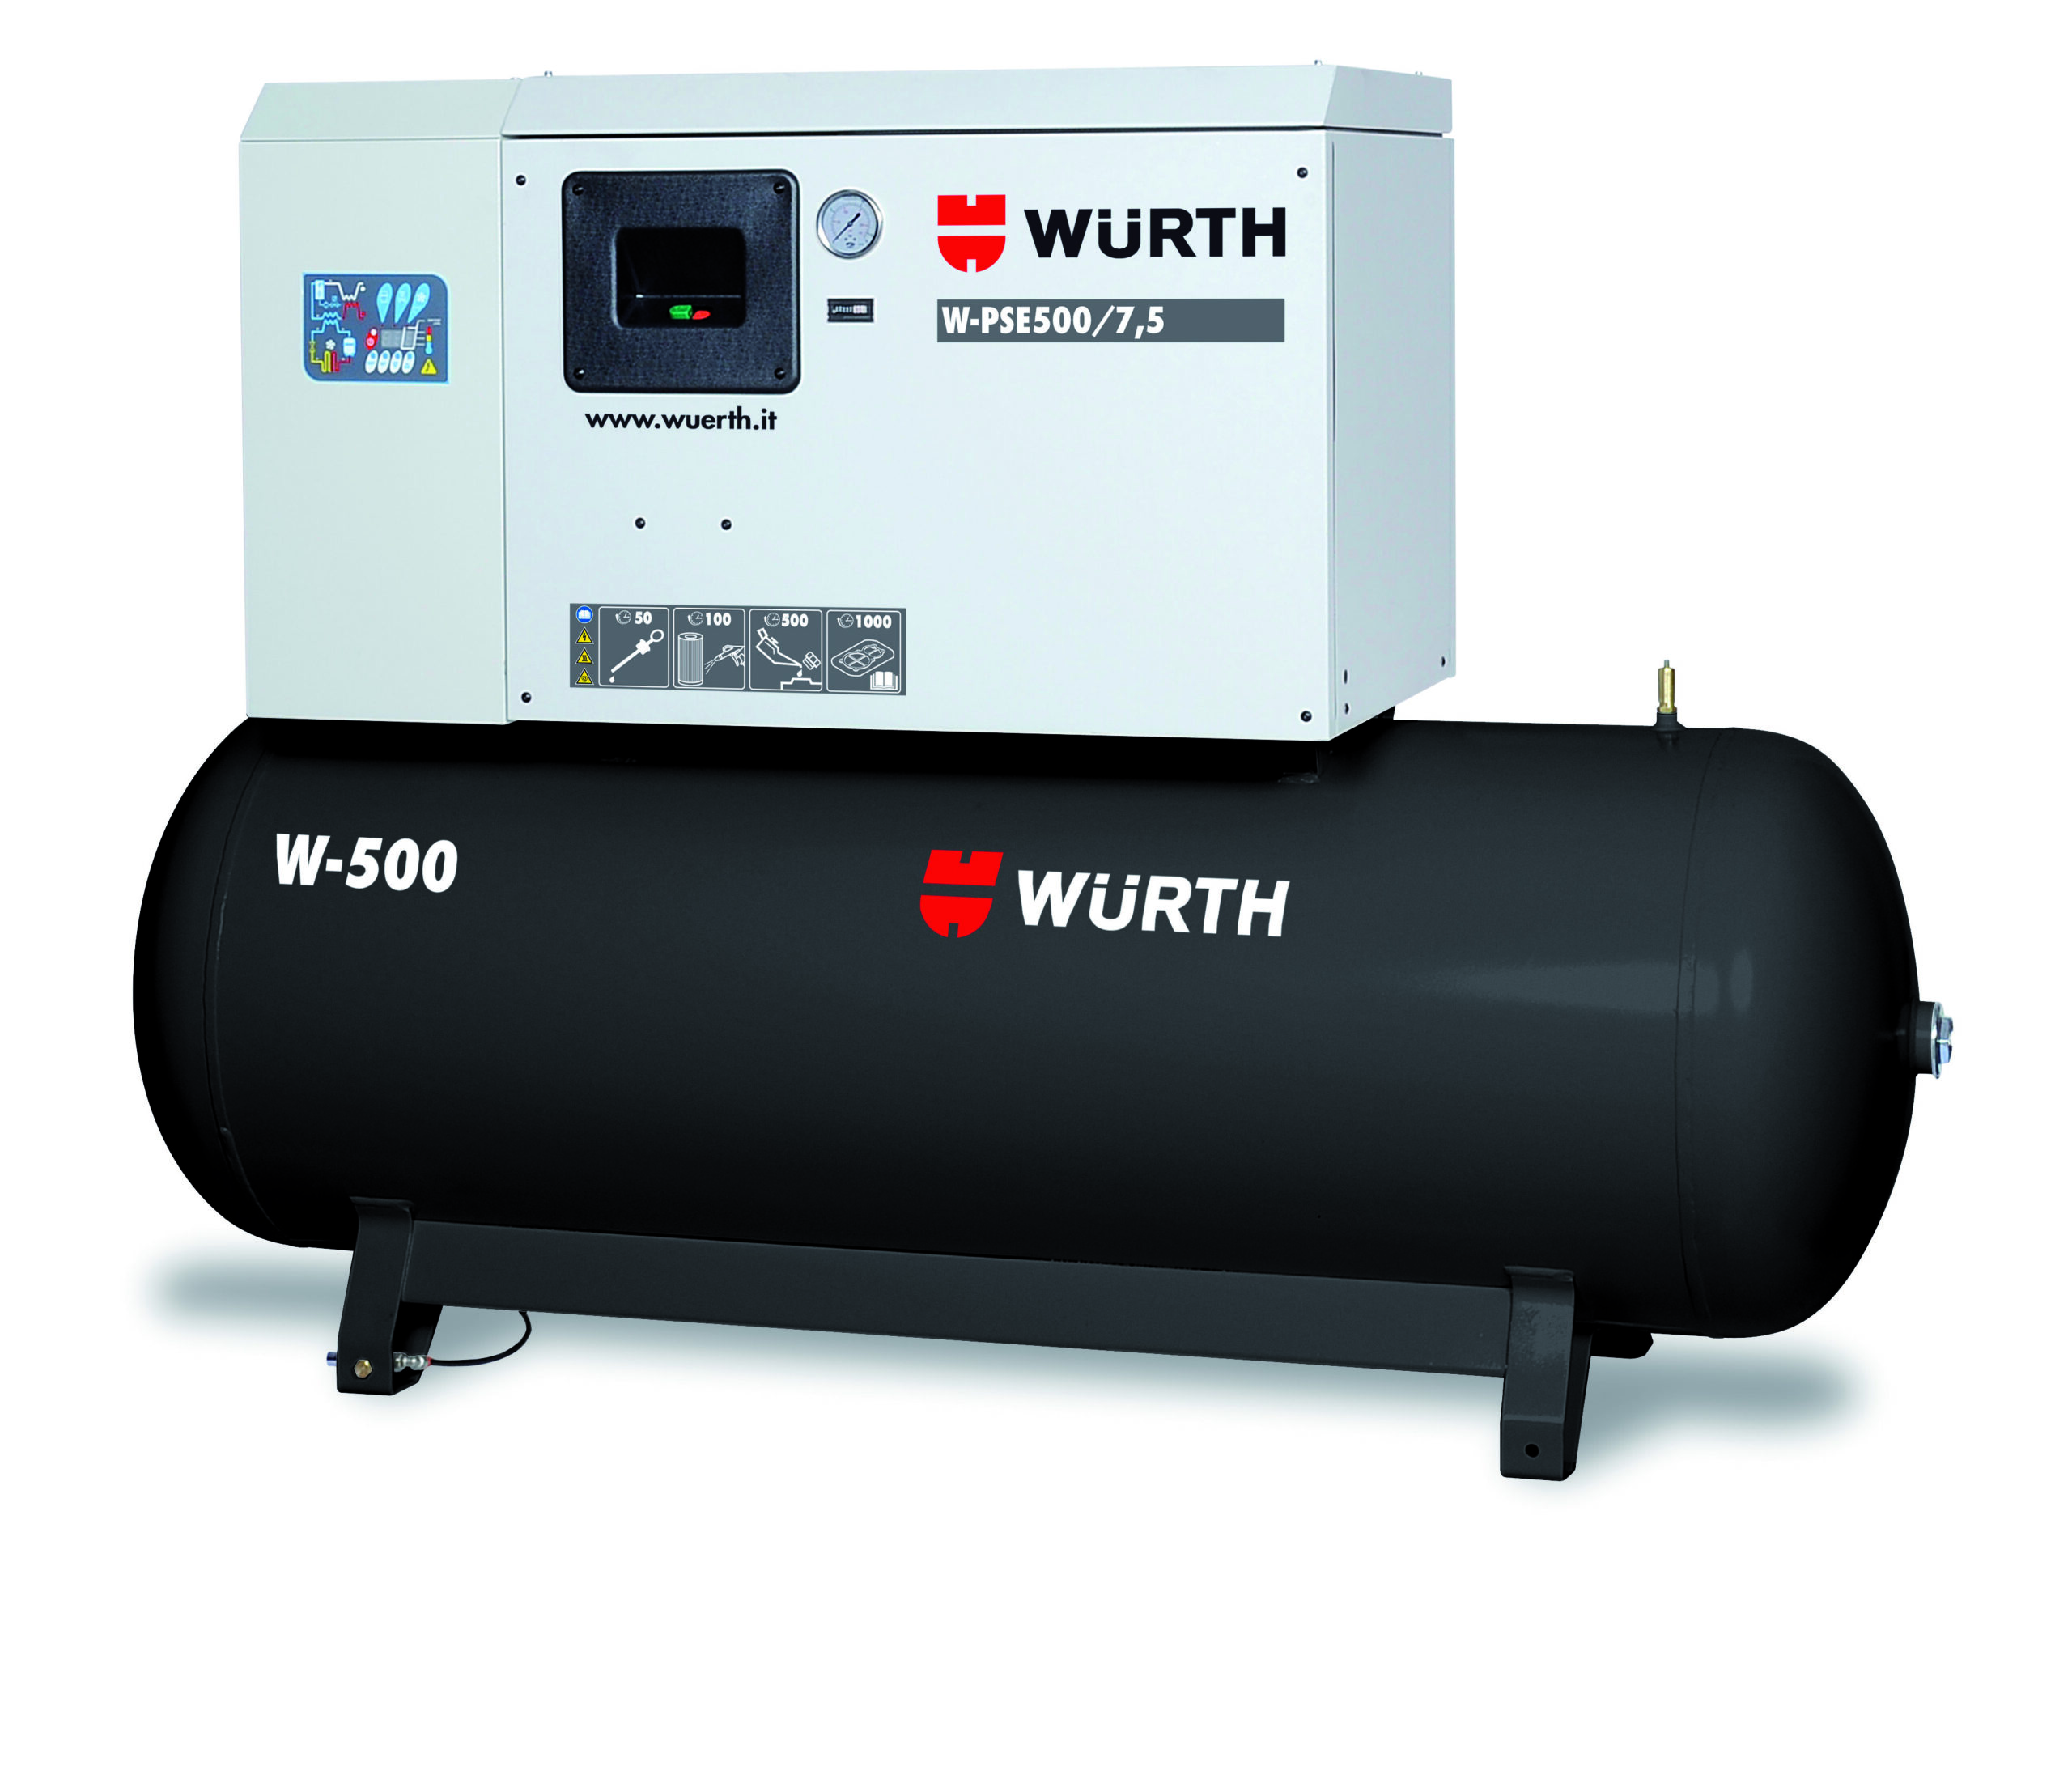 COMPRESSORE SILENZIATO W-PSE 500/7.5 - Equipment by Würth